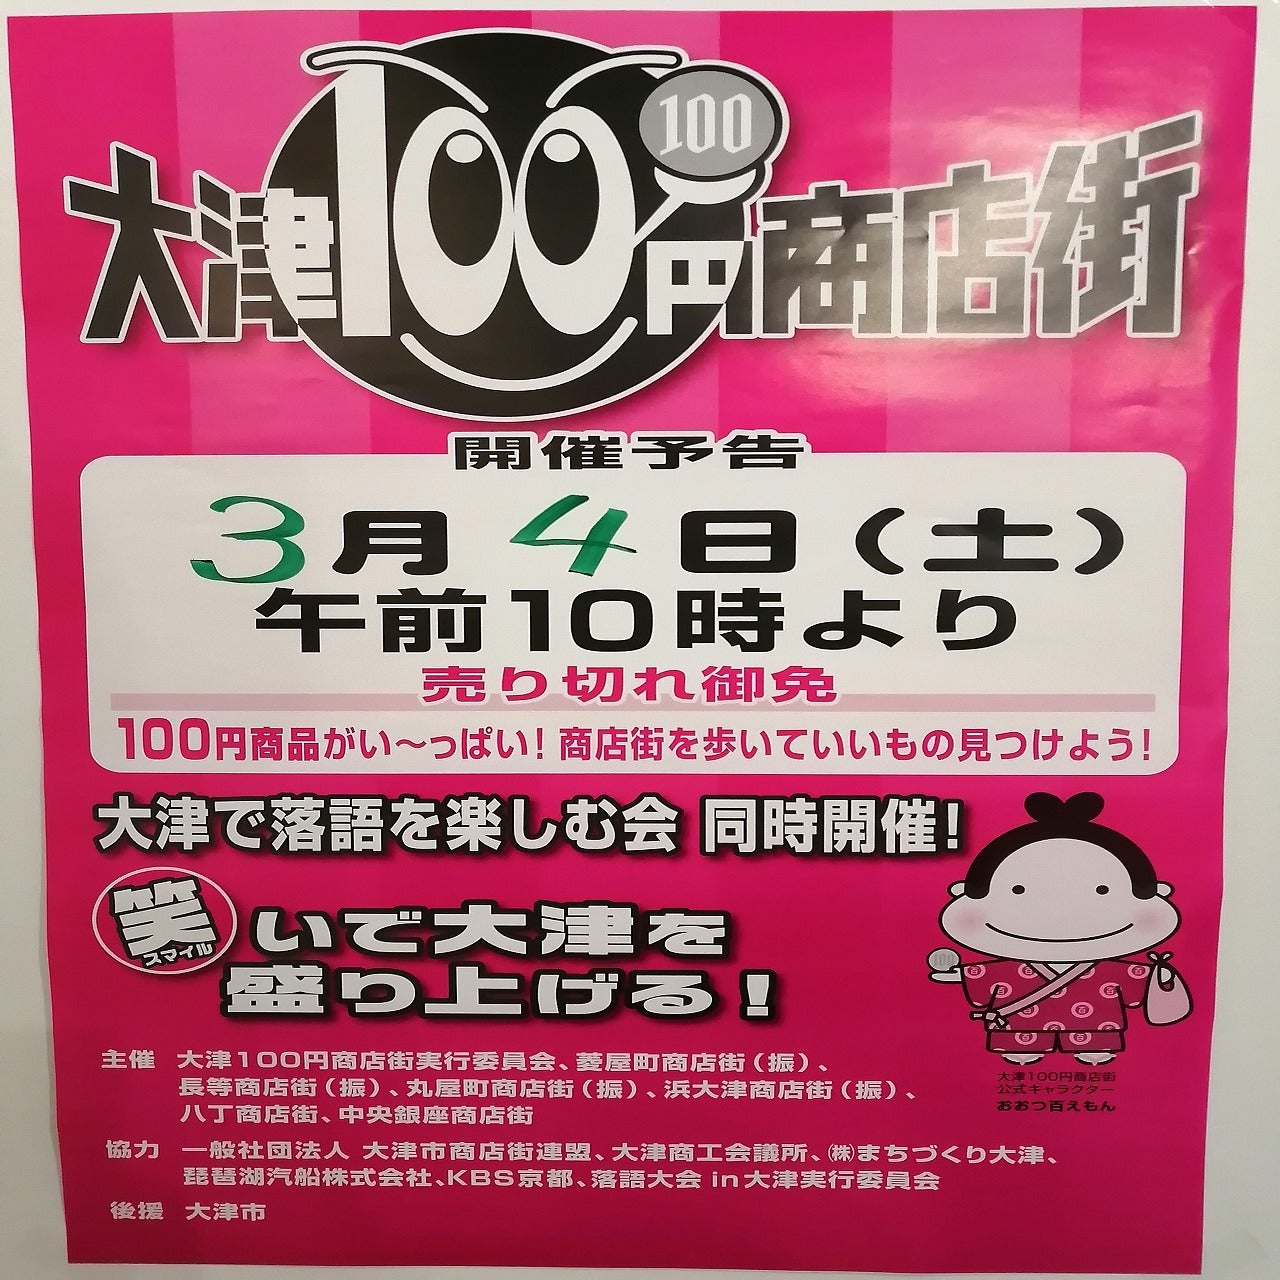 3/4（土）100円商店街開催！！